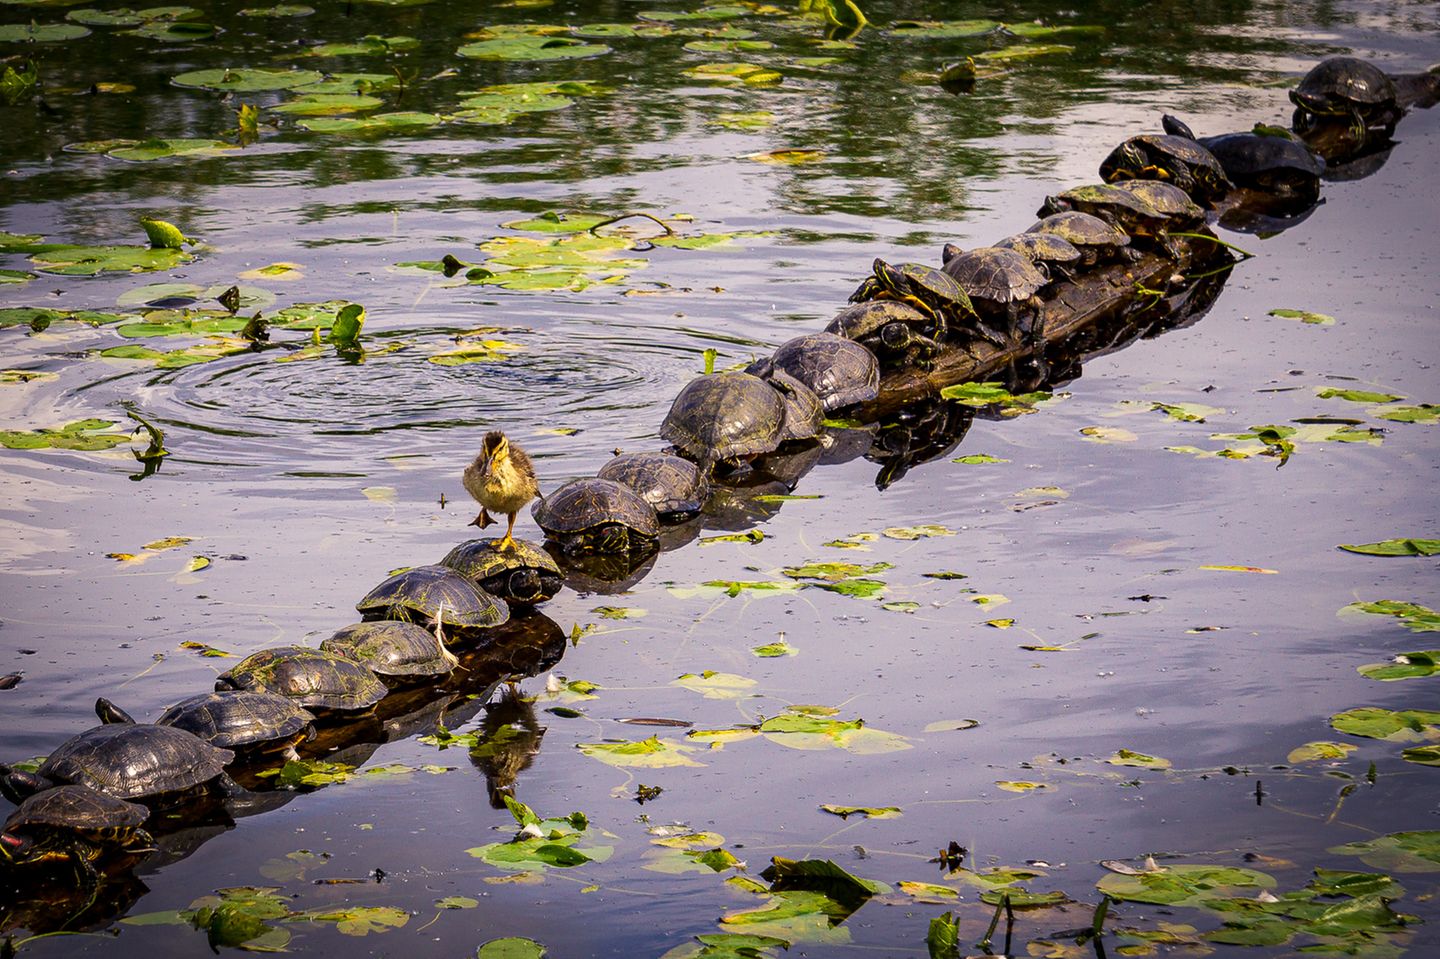 Recht effizient nutzte die kleine Ente Schildkröten-Panzer als Weg. Fotografiert wurde das scheinbar wasserscheue Tierchen von Ryan Sims